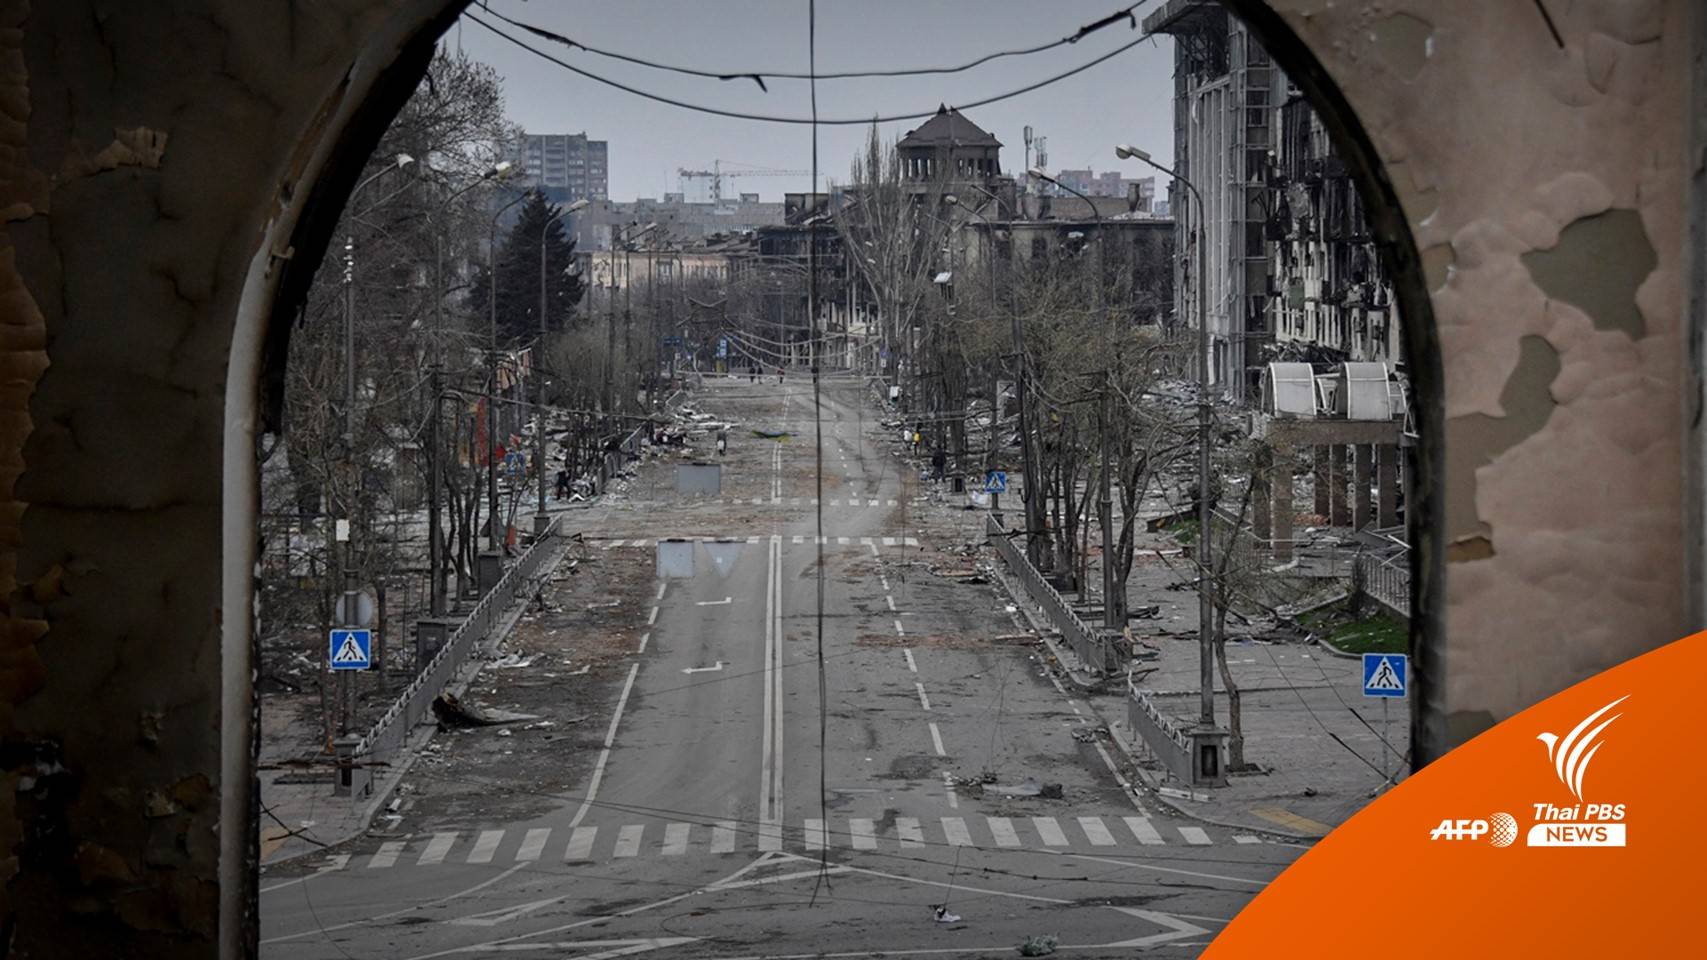 ยูเครนชี้การสู้รบใน "มารีอูโพล" เป็นฟางเส้นสุดท้ายเจรจาสันติภาพ